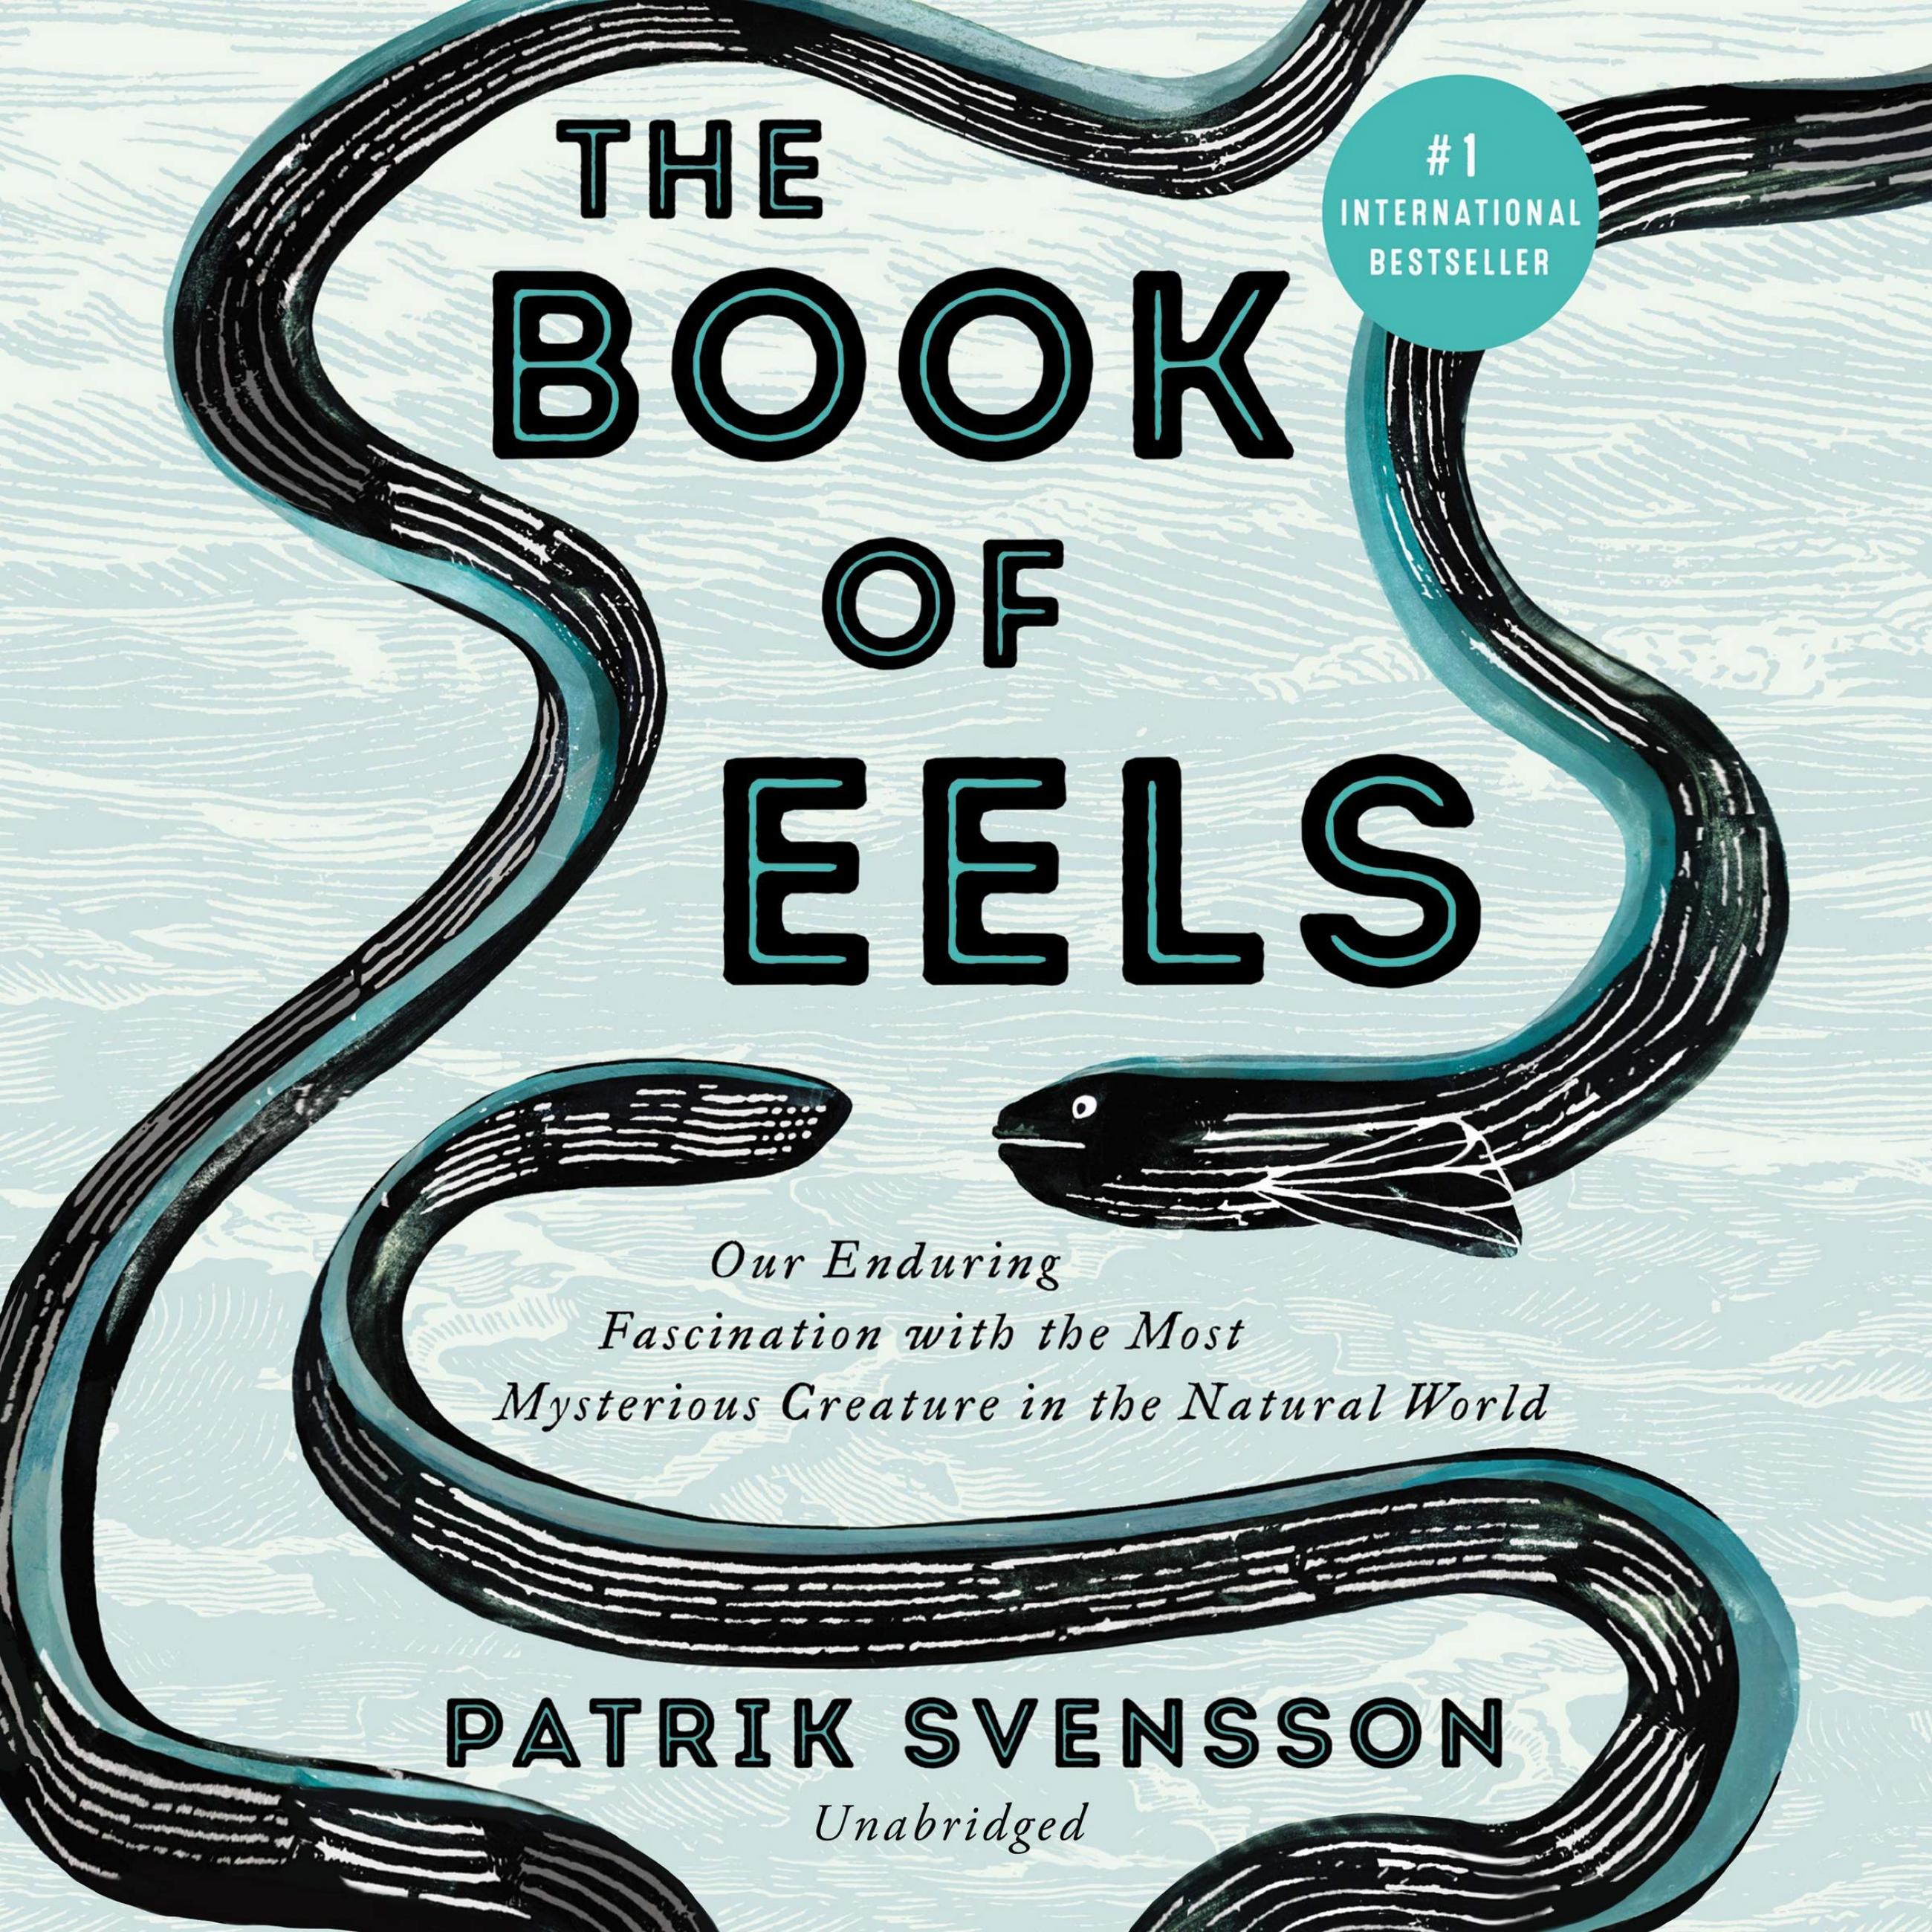 Book of eels